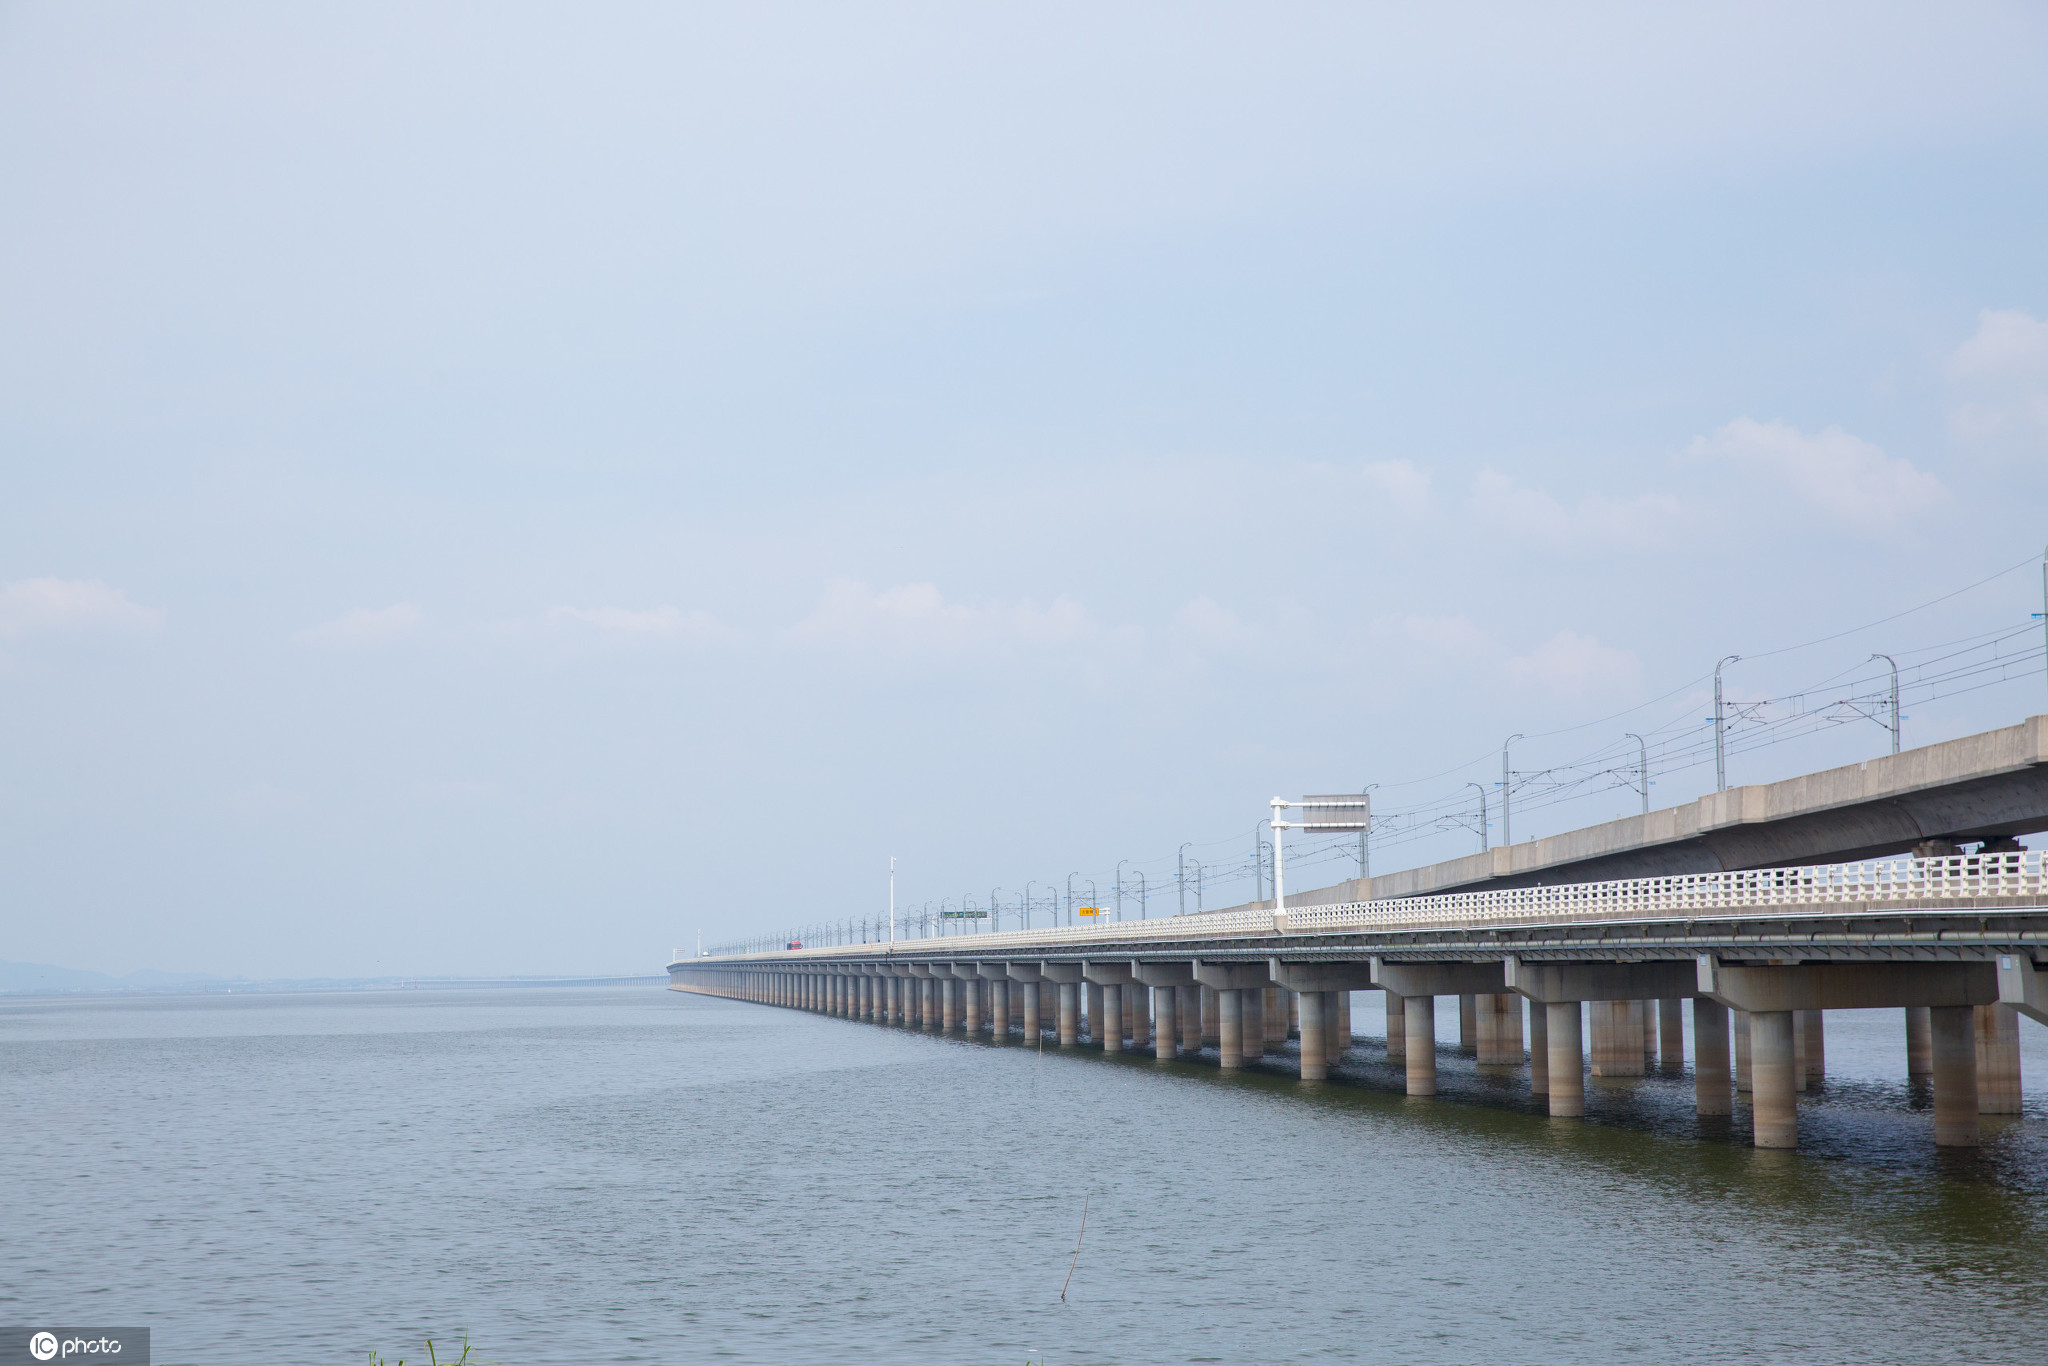 乘坐南京地铁s9号线在全长12公里的石臼湖特大桥上飞驰,窗外便是清澈